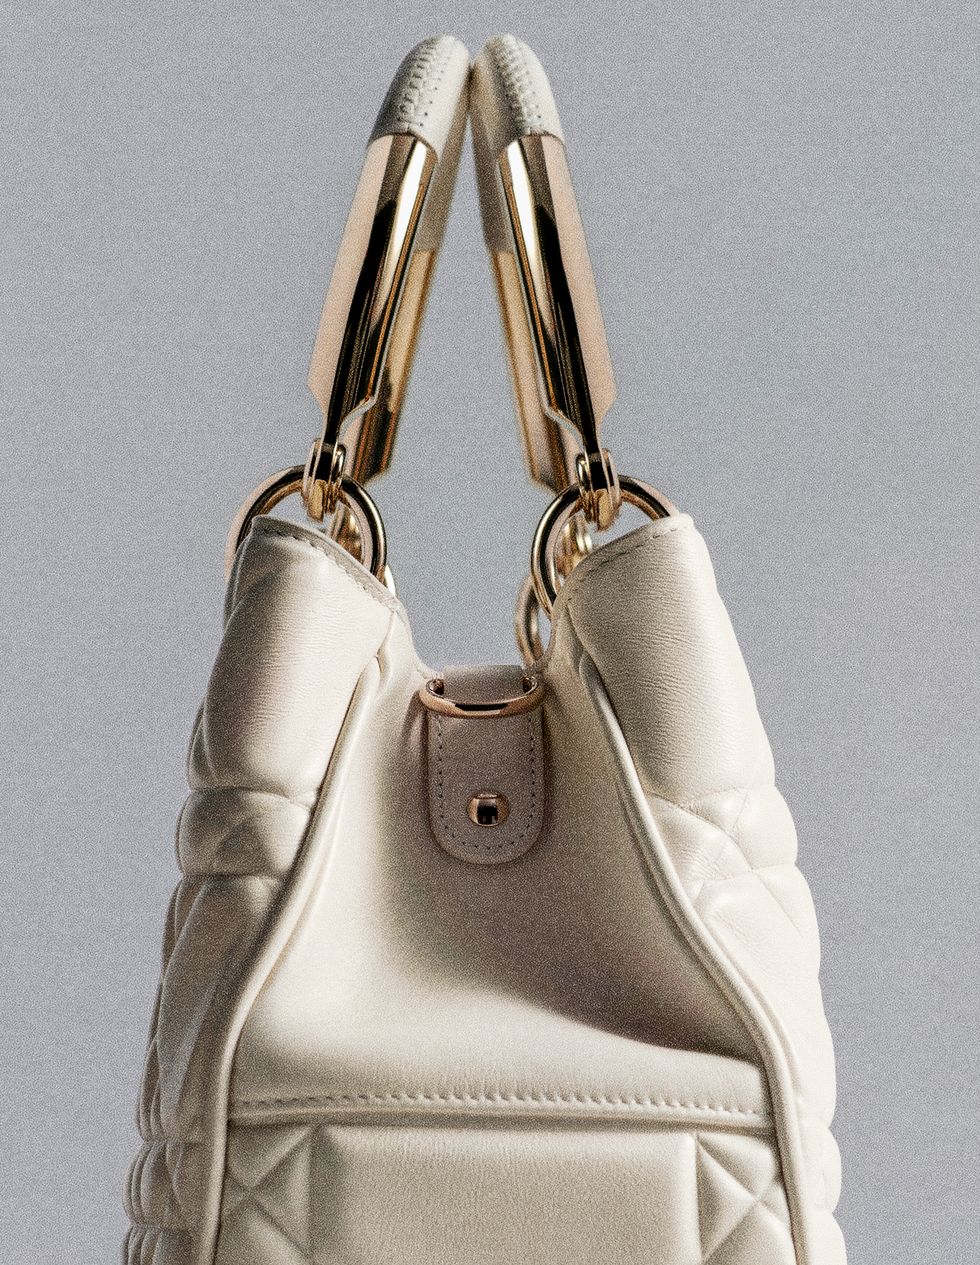 Maria Grazia Chiuri's New Take On The Dior Lady 95.22 Bag